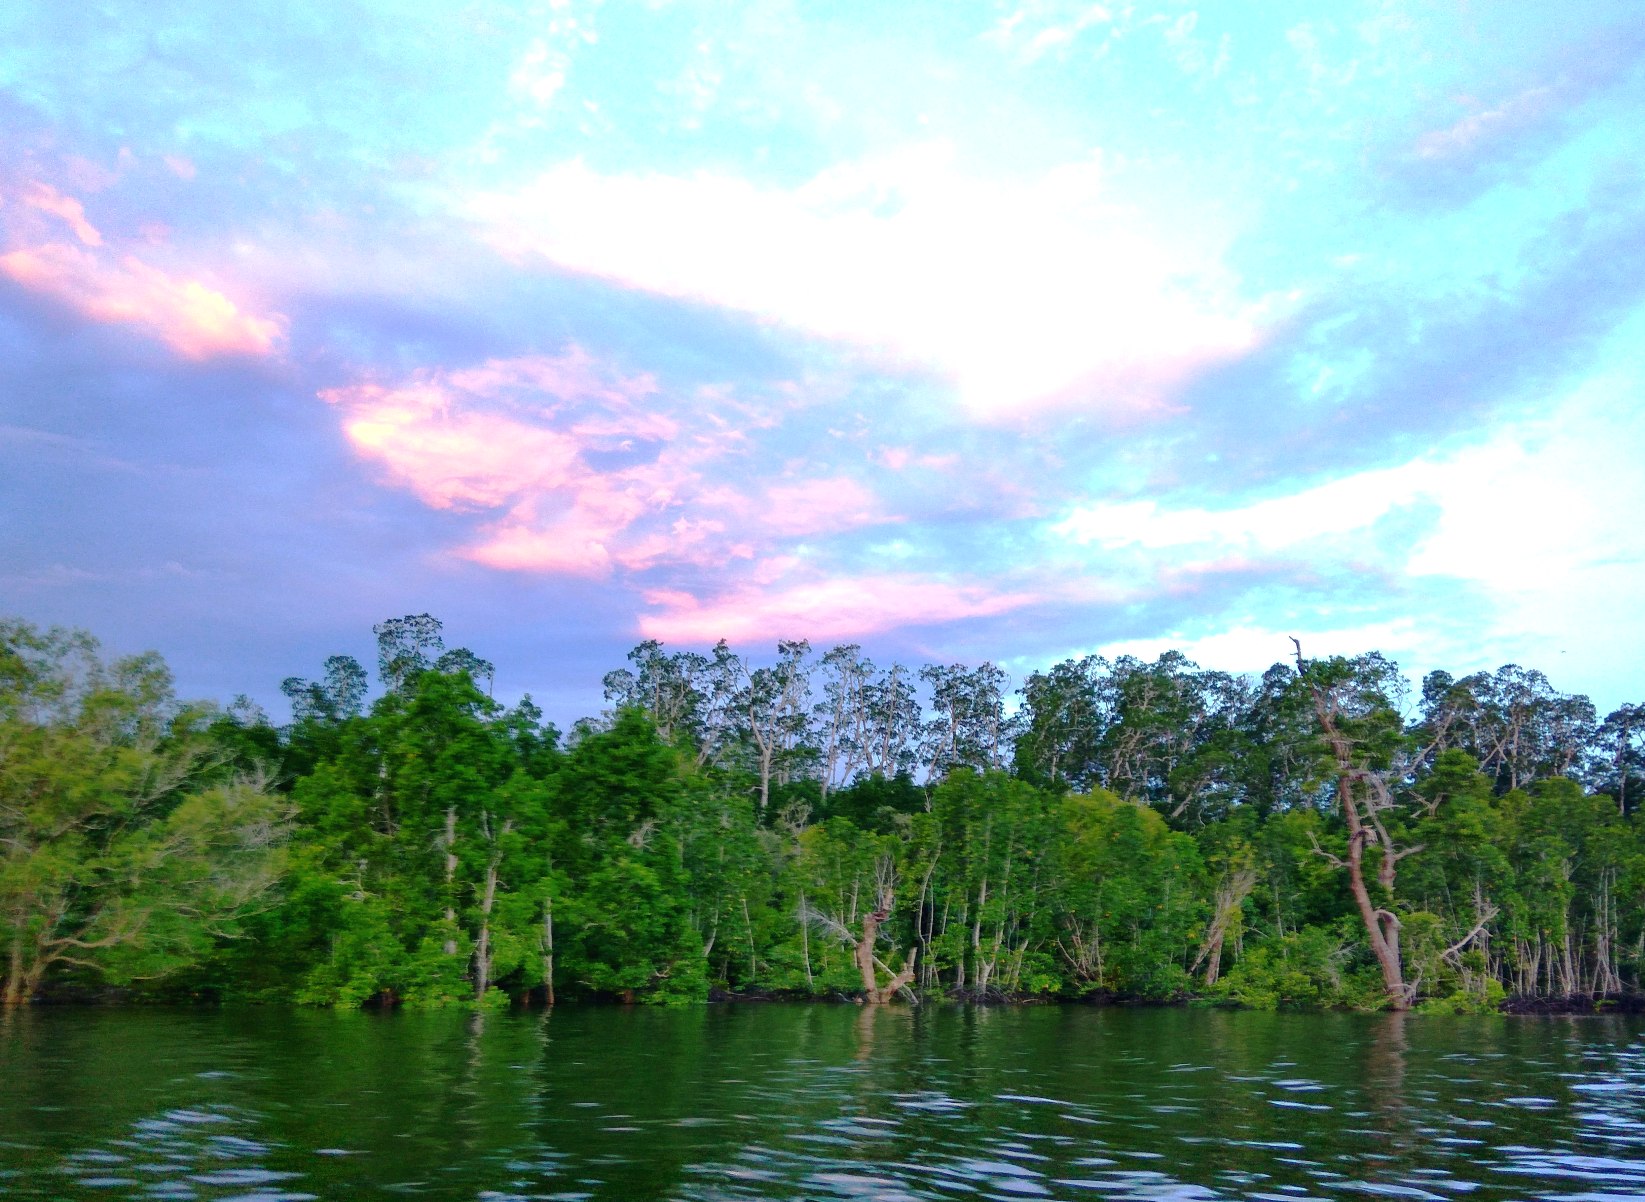 Hutan mangrove di Teluk Arguni Kaimana Papua Barat. Menurut Conservation Internasional (CI) Indonesia, mangrove berperan penting sebagai stok karbon GRK untuk mengatasi perubahan iklim dan berperan ekologis yang menguntungkan secara ekonomis. Foto : M Ambari